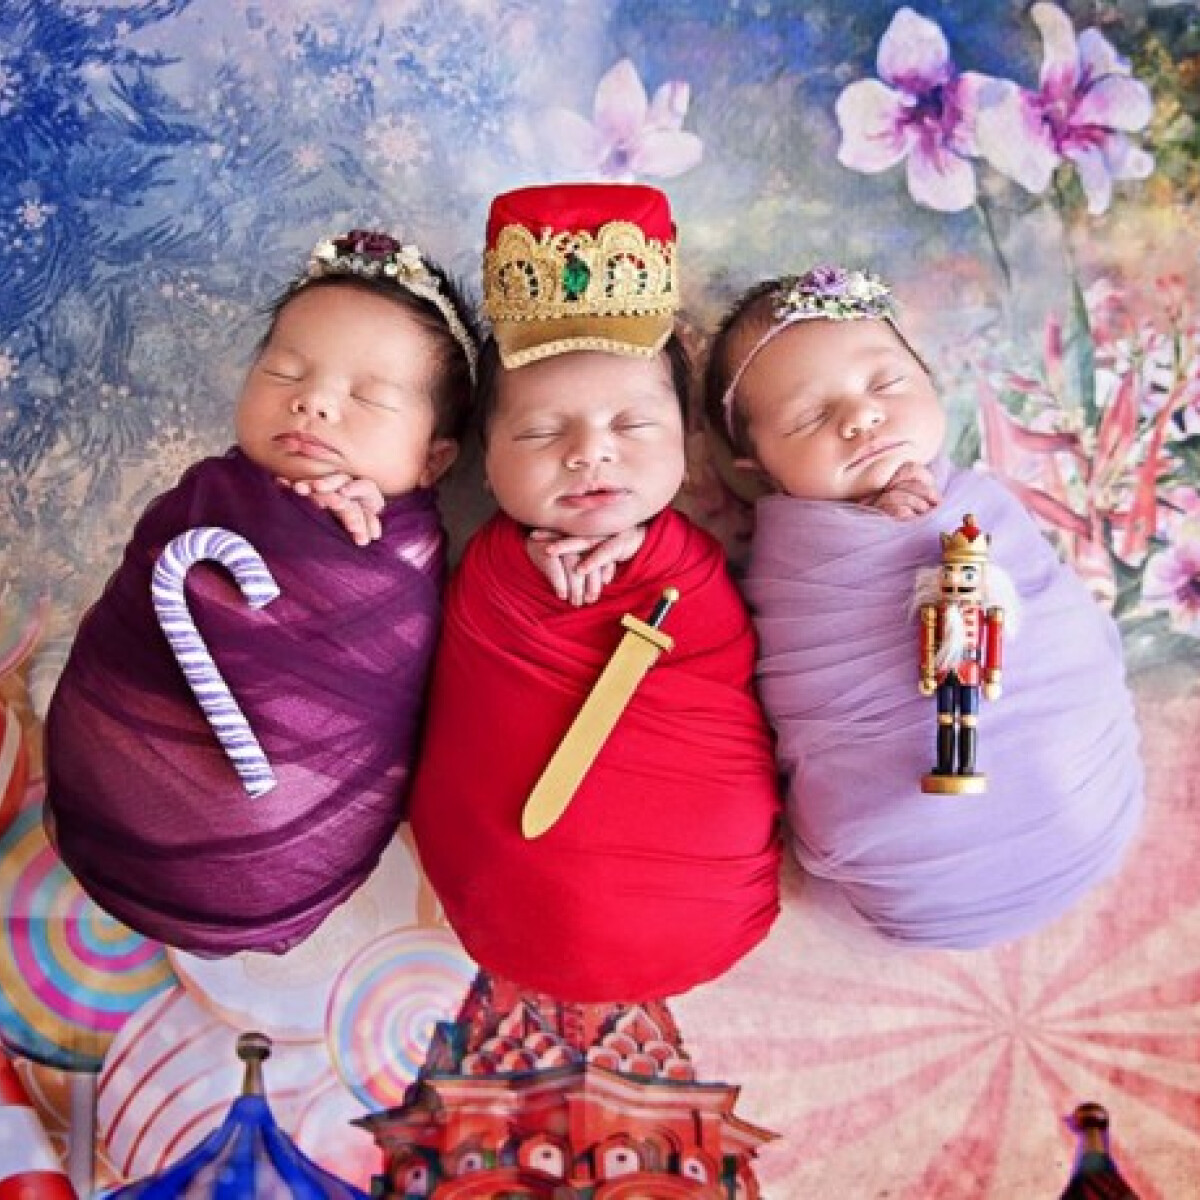 Hihetetlenül cuki fotókat készített babákról egy fotós - olvadozzatok velünk!